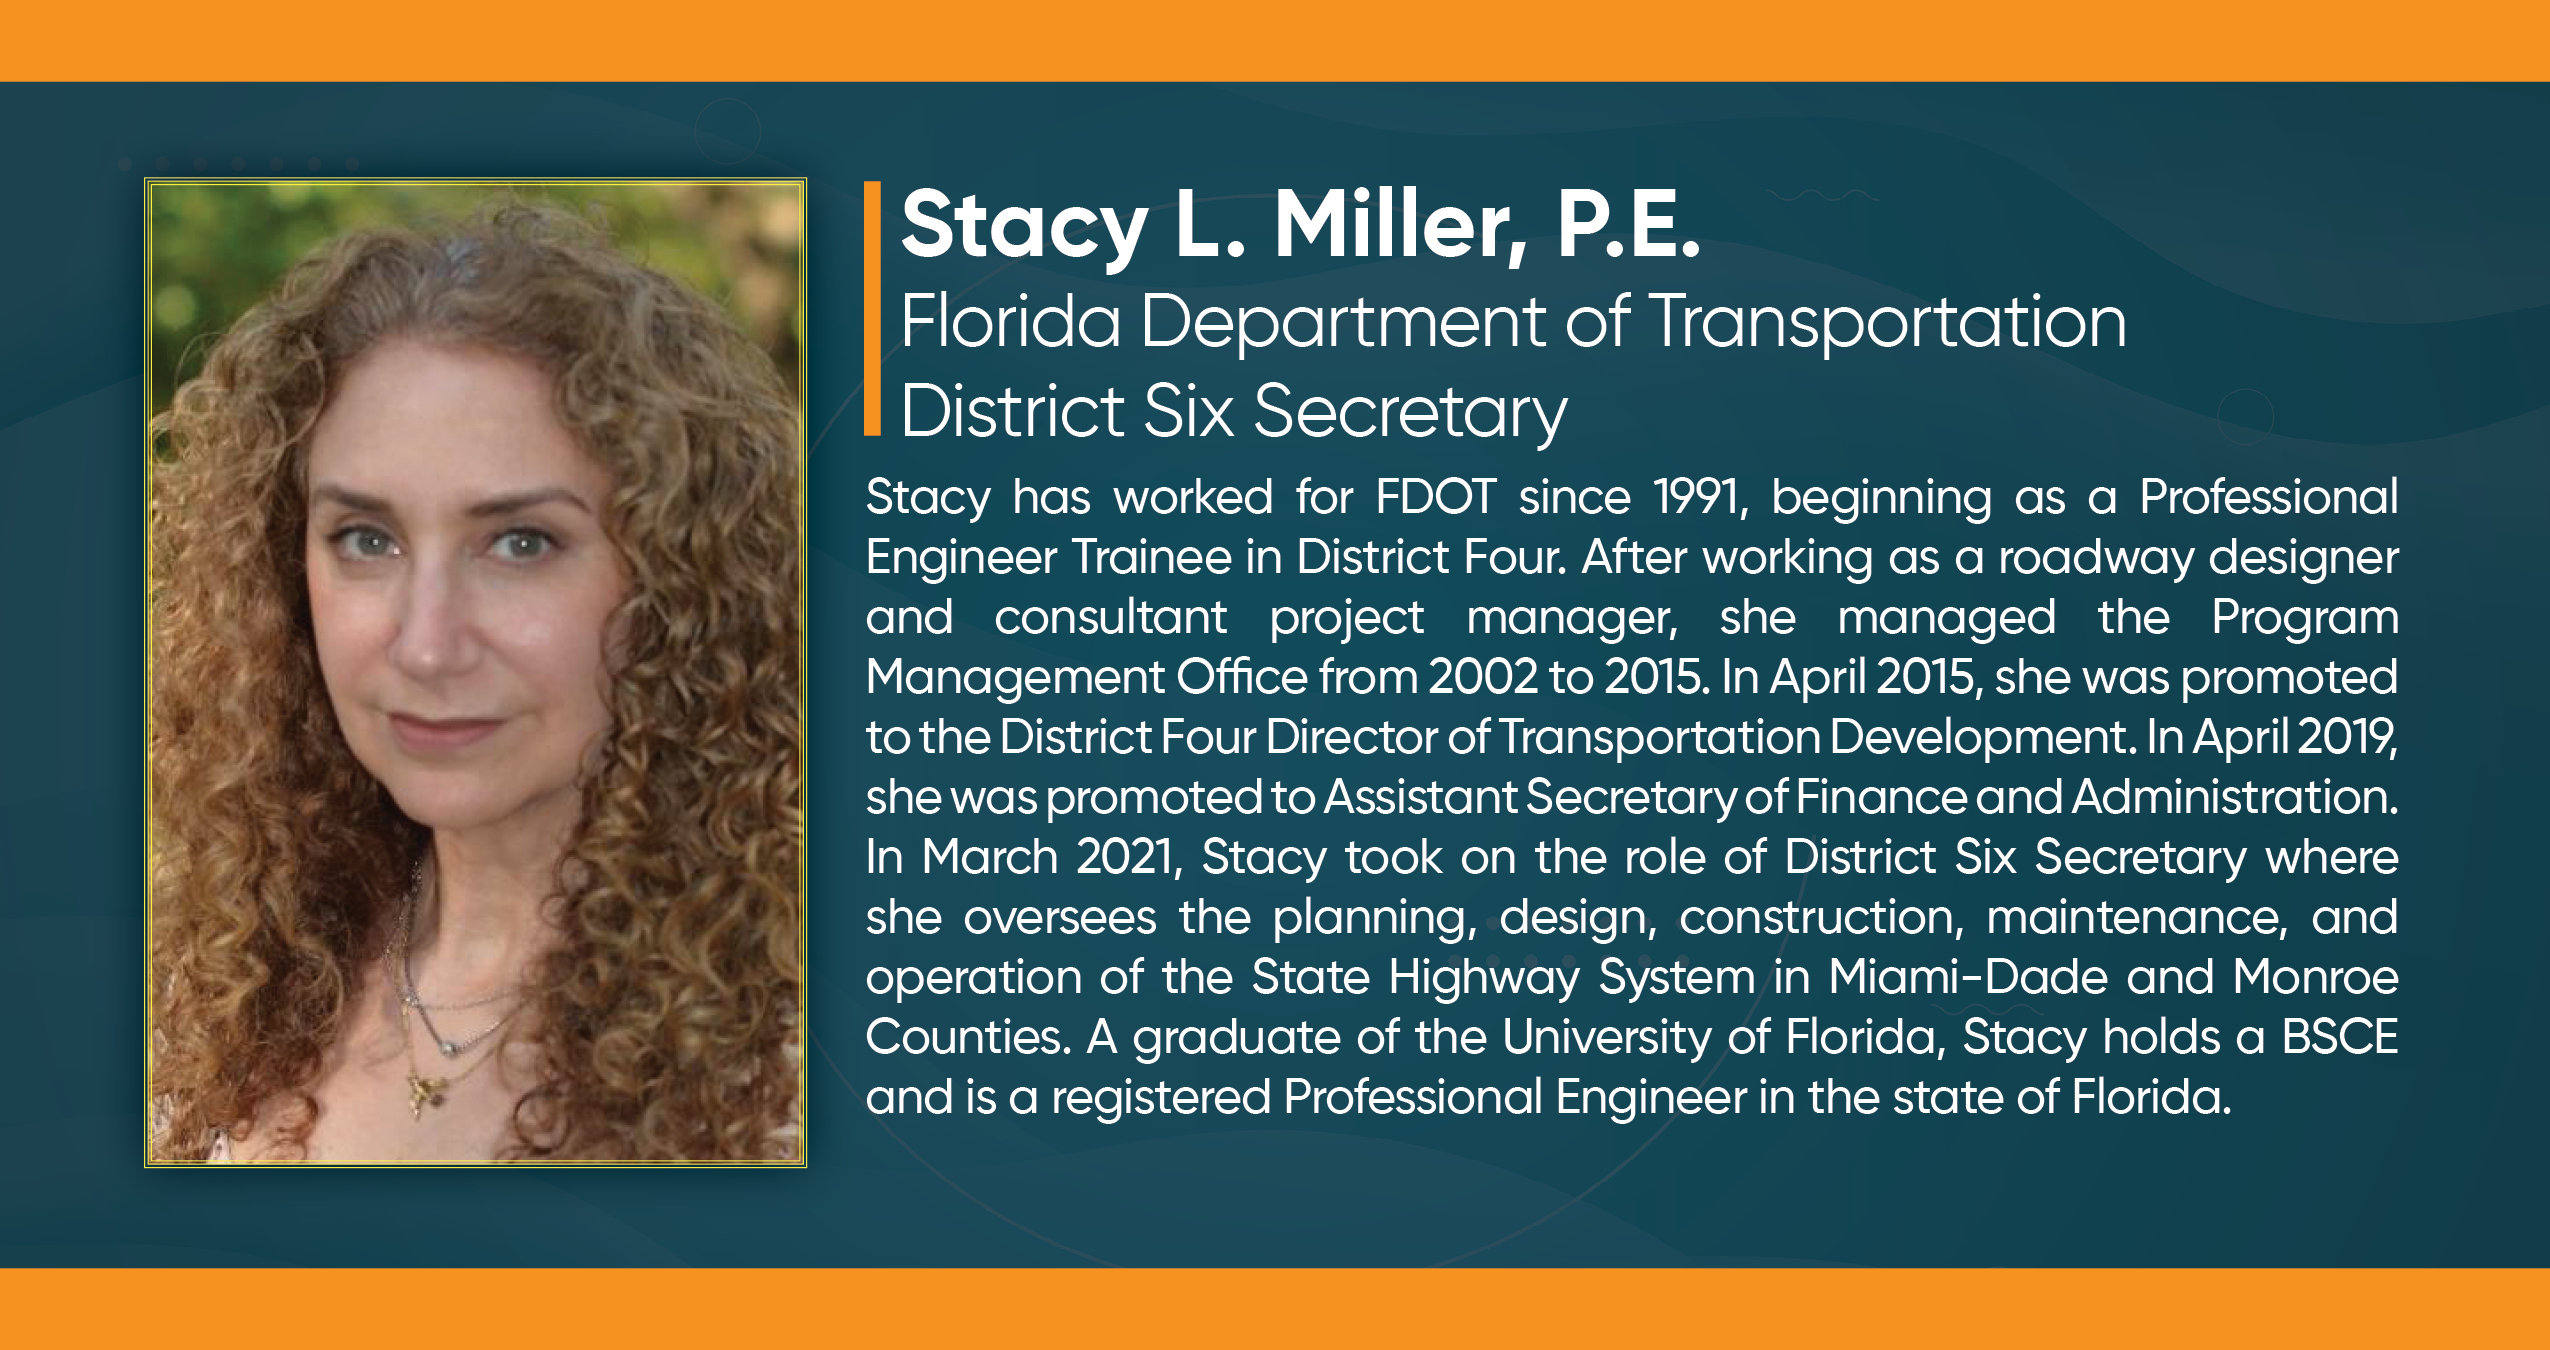 Stacy L. Miller